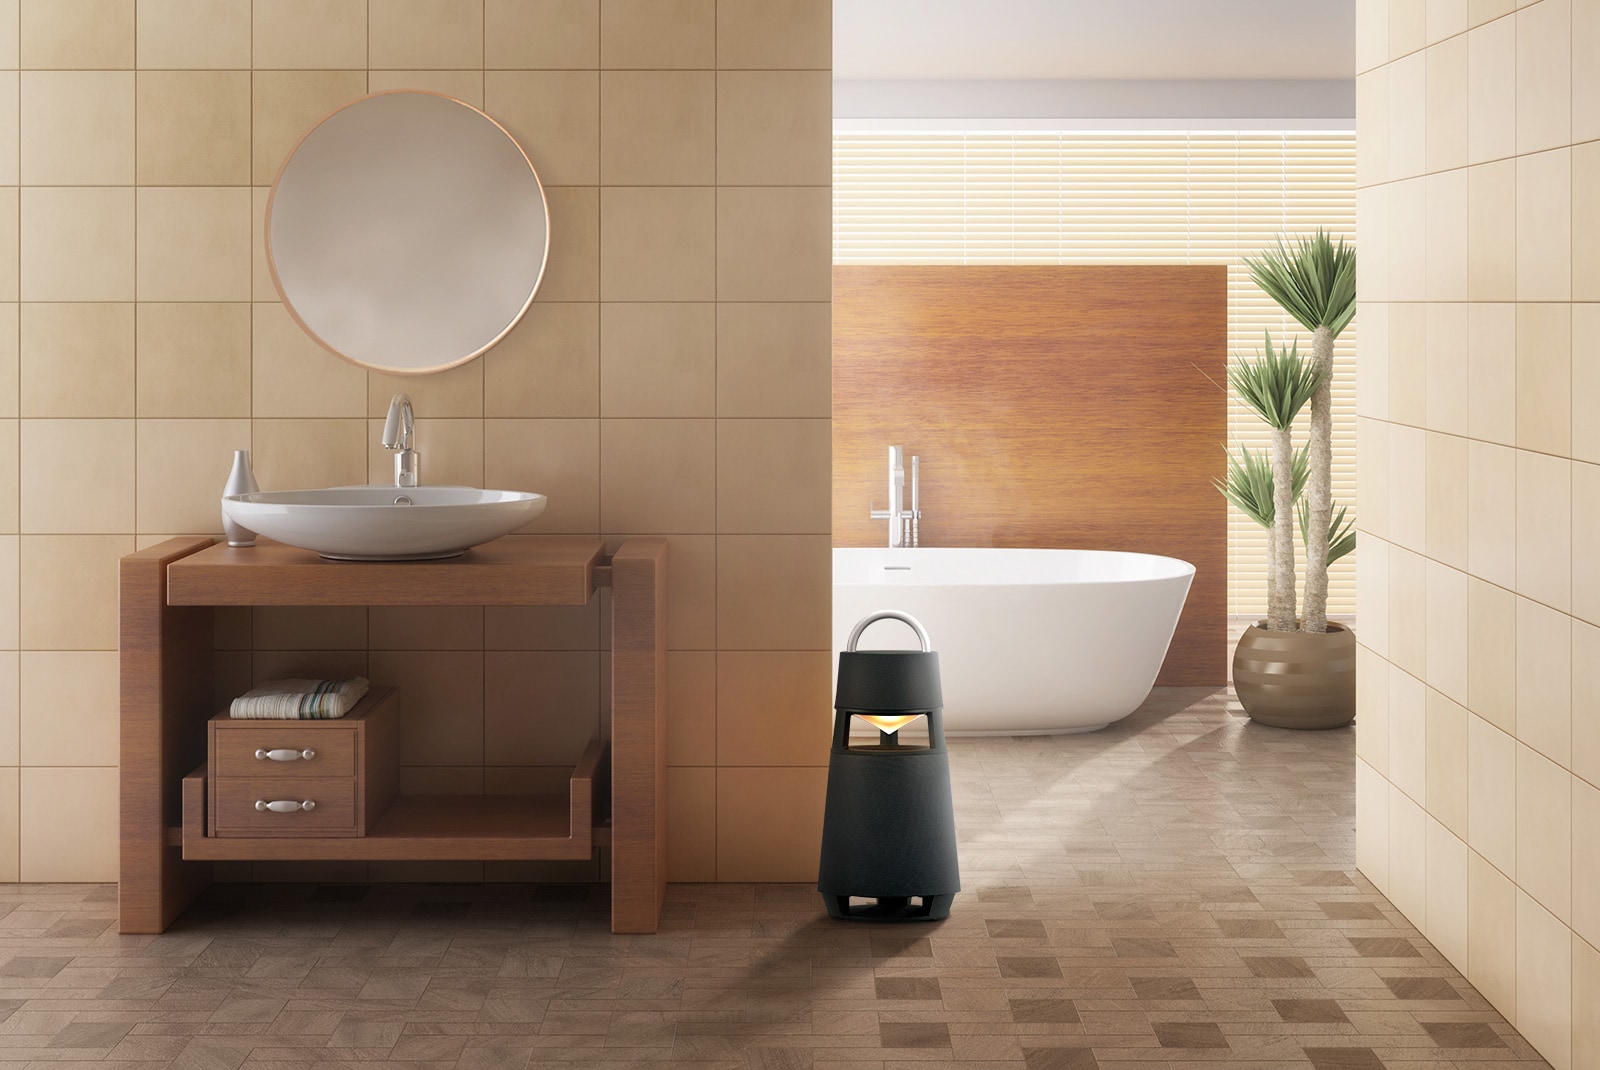 Hình ảnh loa XBOOM 360 được đặt ở phòng tắm có độ ẩm hơi cao để thể hiện khả năng chống ẩm của sản phẩm.